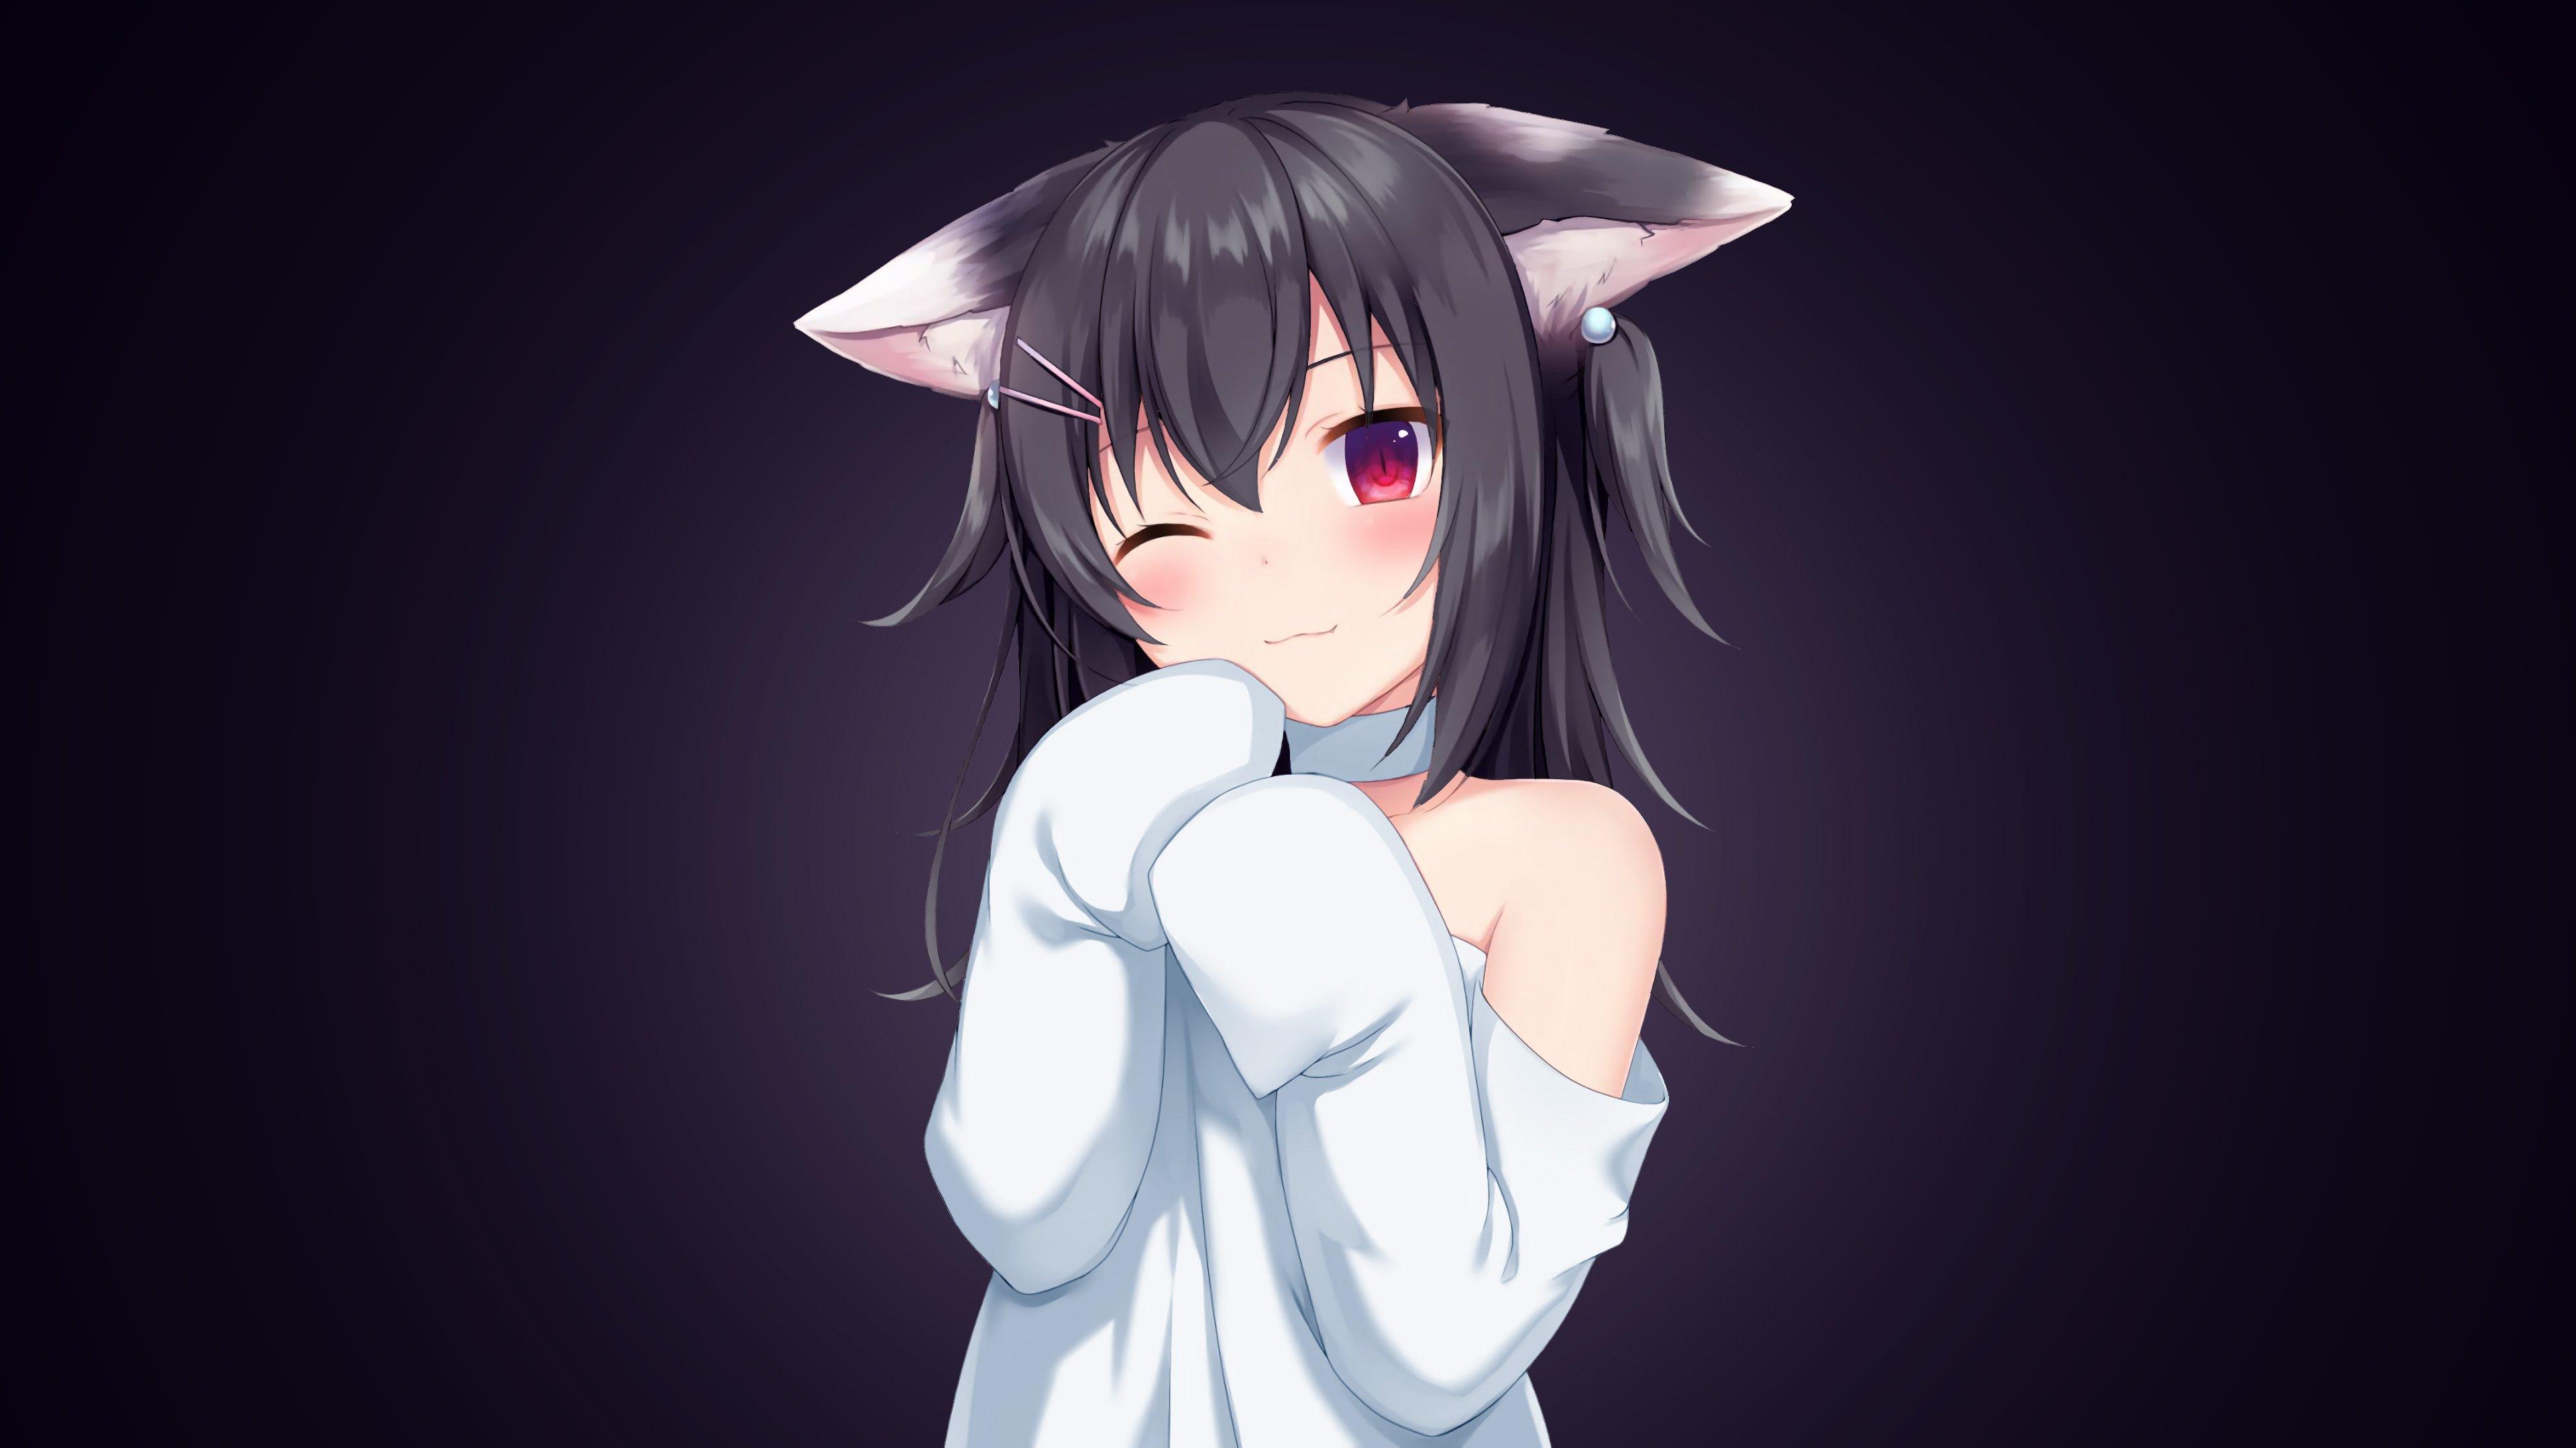 Anime Girl With Cat Ears Desktop Wallpaper